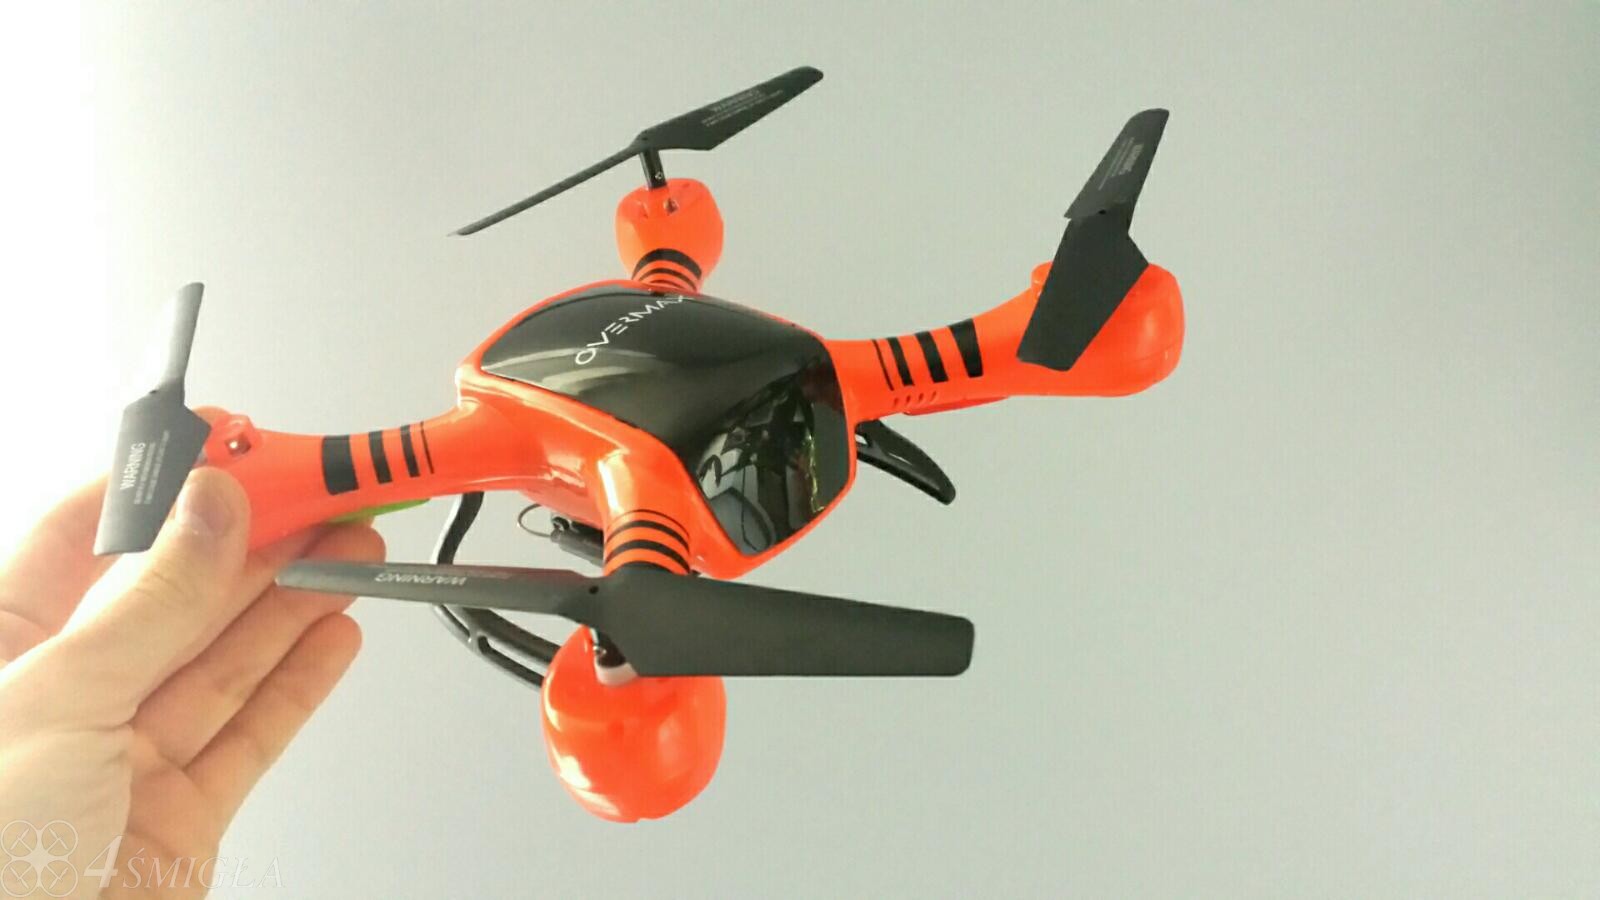 Recenzja: Overmax Xbee Drone 3.5